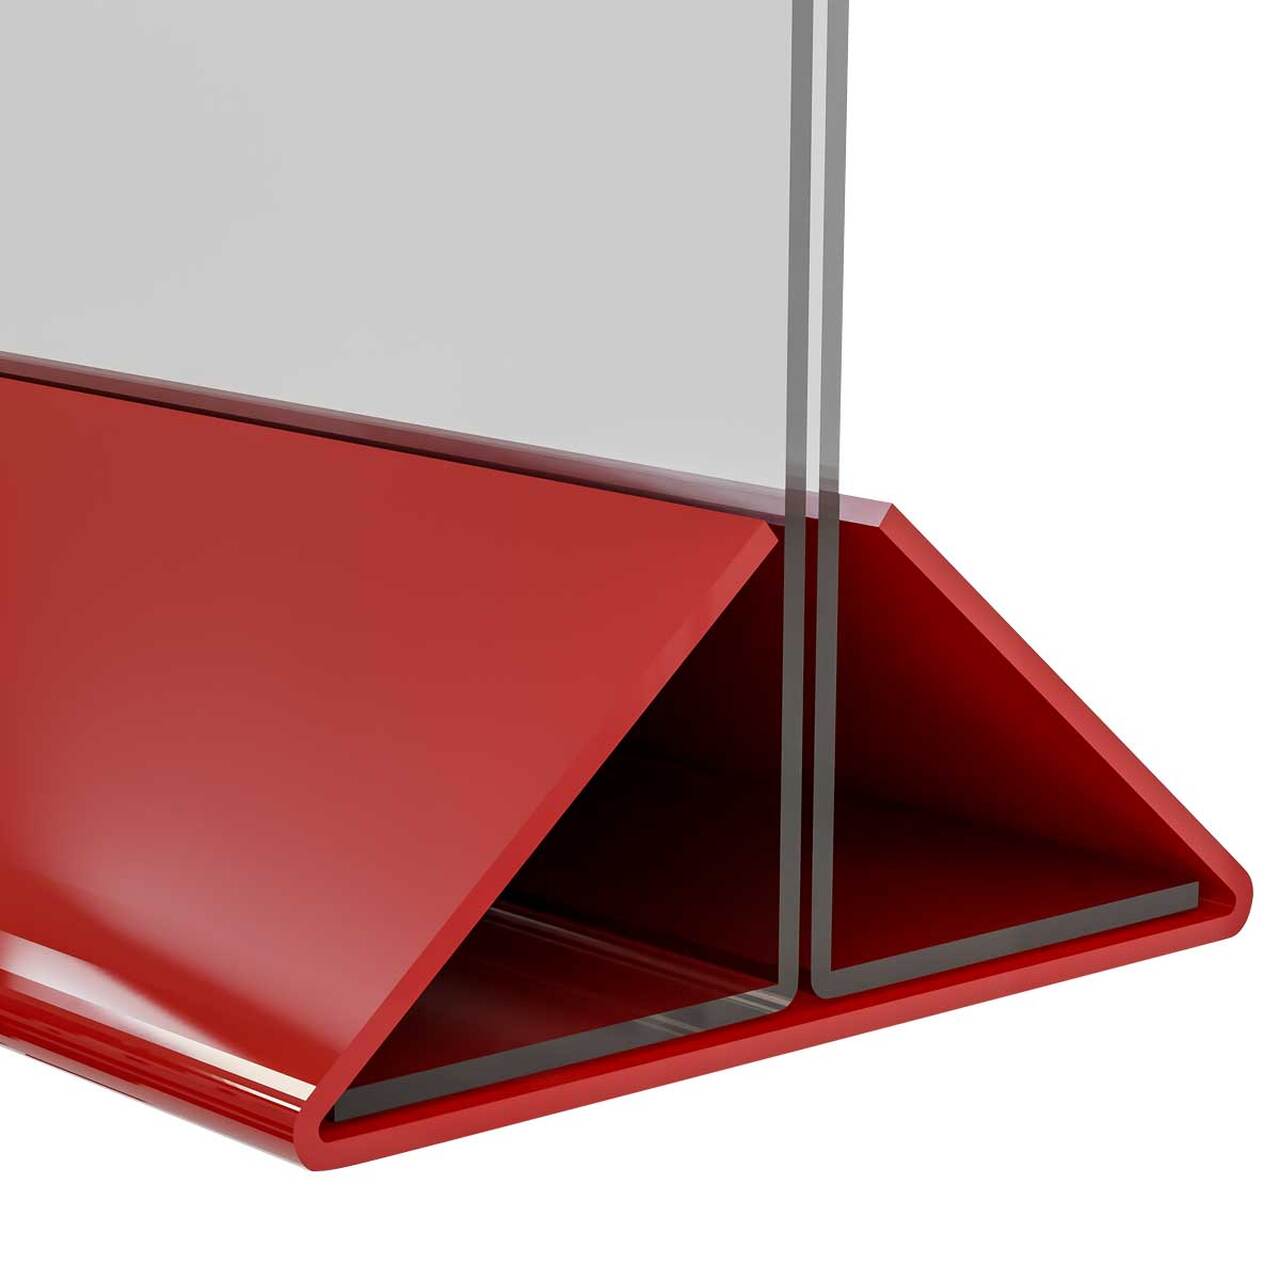 Suport meniu tip T, transparent, cu bază din plexiglas roșu, format 100x210mm, Landscape